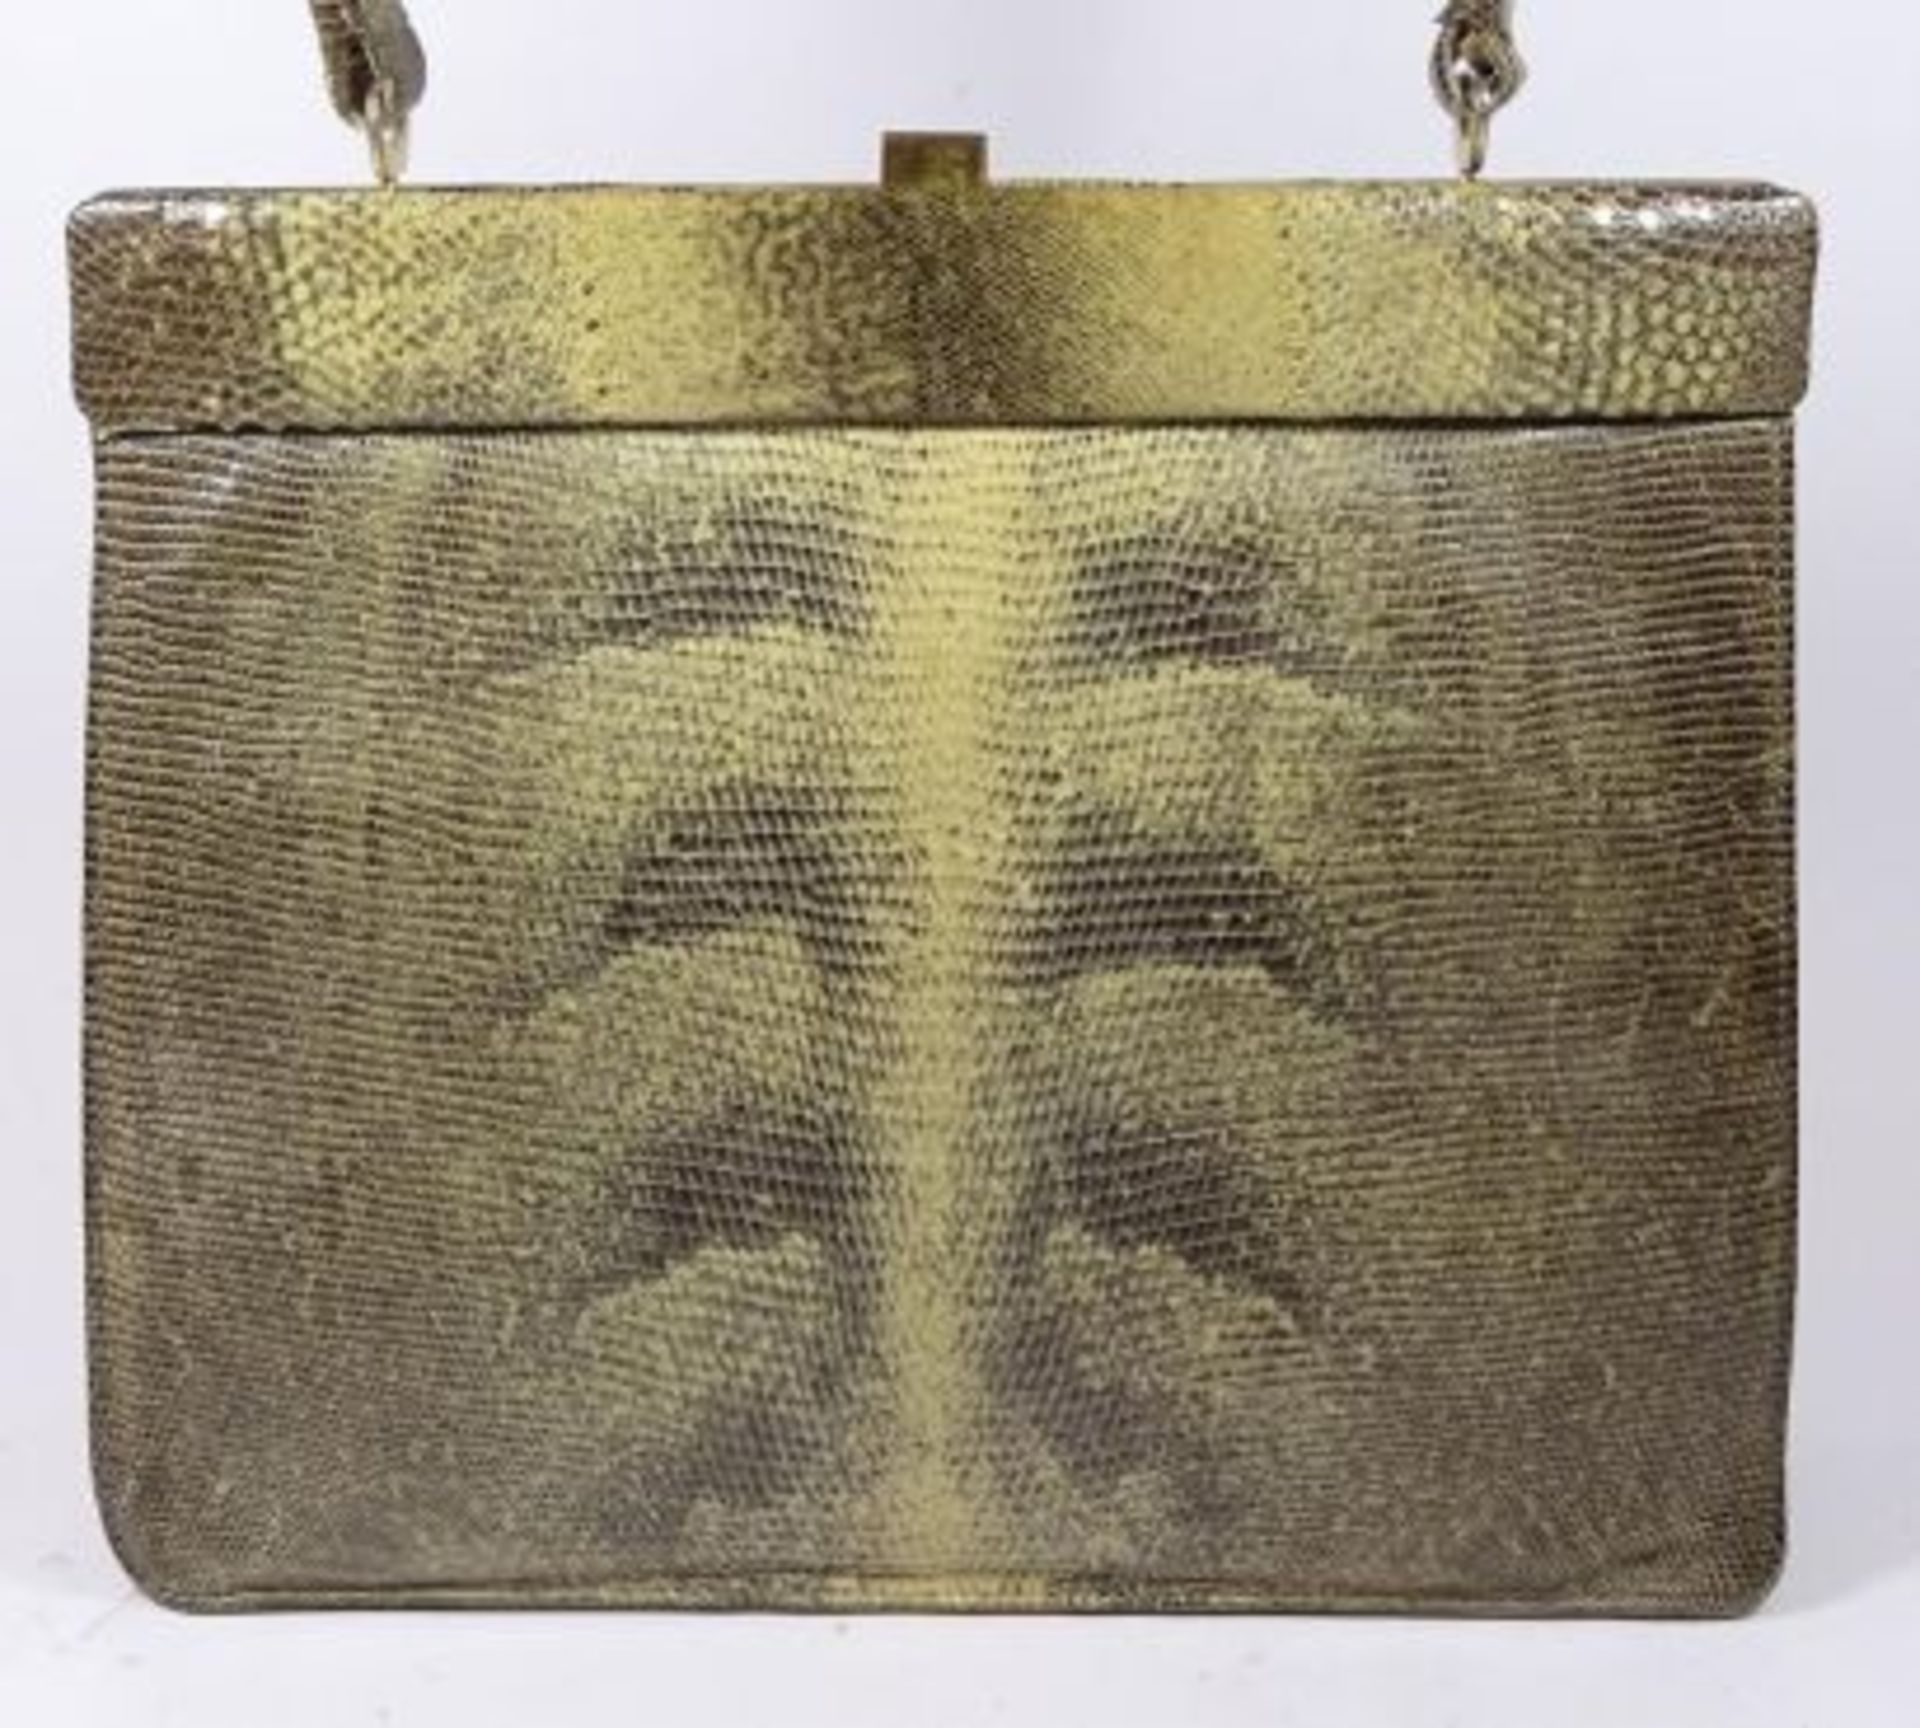 Krokoleder-Handtasche, H-21 cm, B-24 cm - Bild 3 aus 4